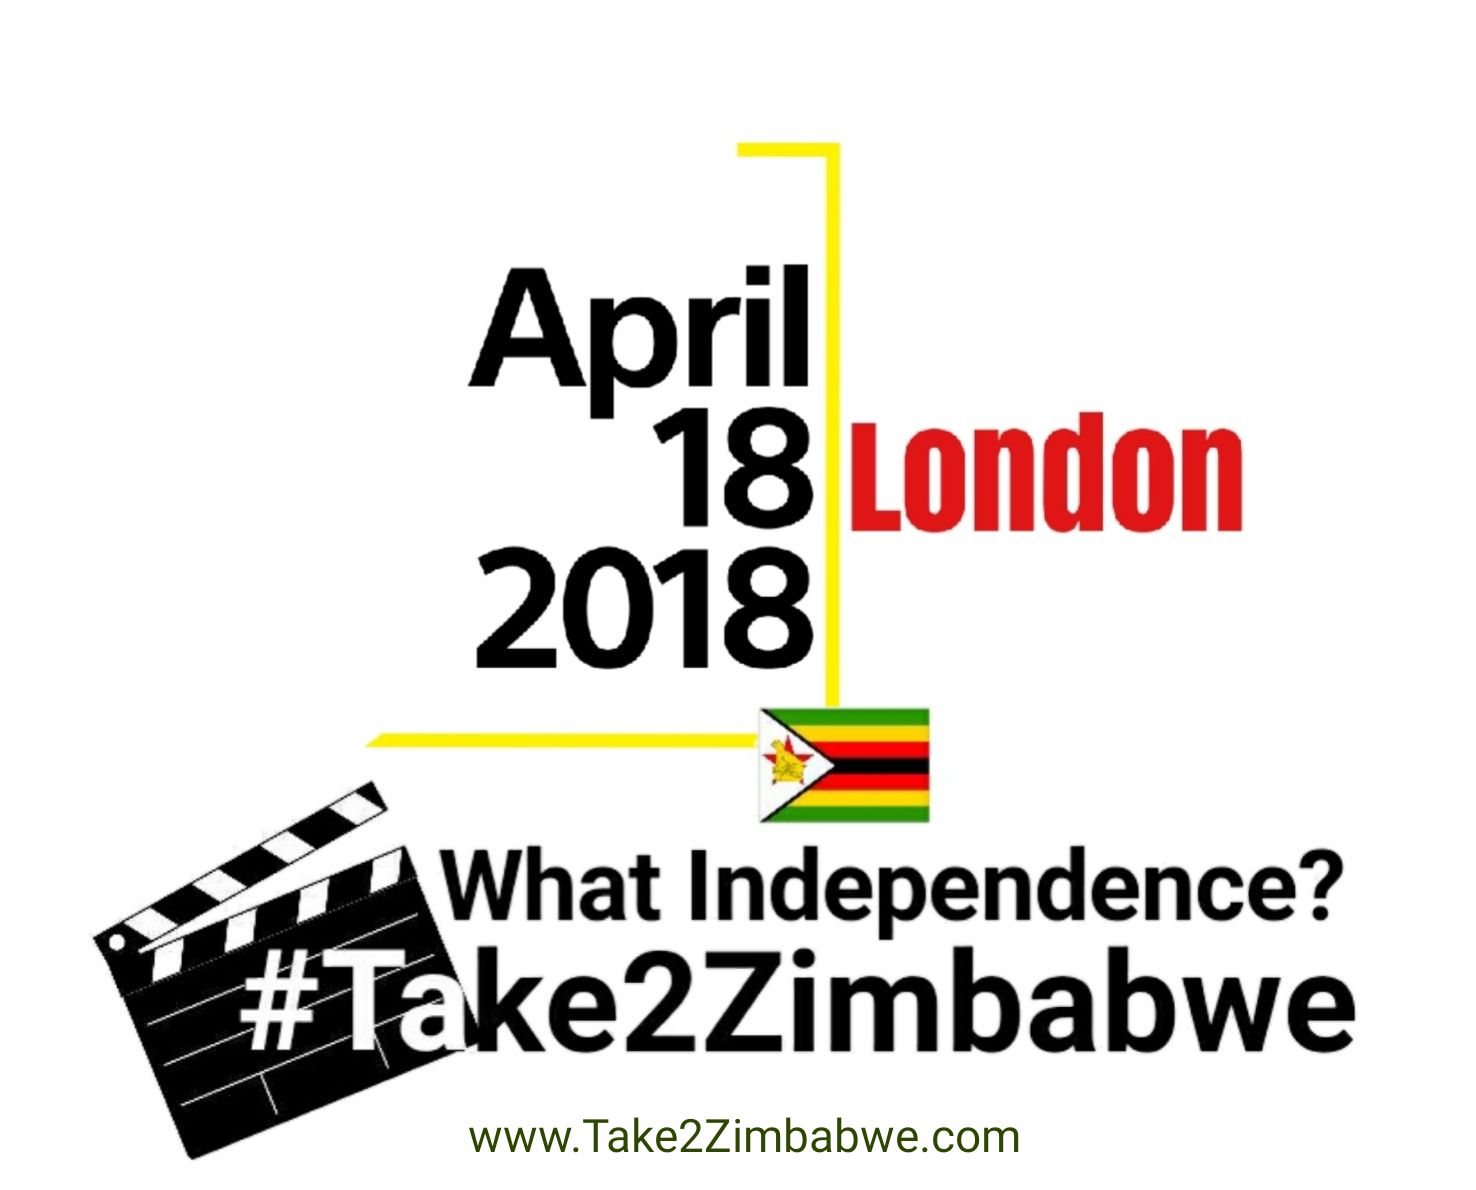 Take2Zimbabwe - What Independence